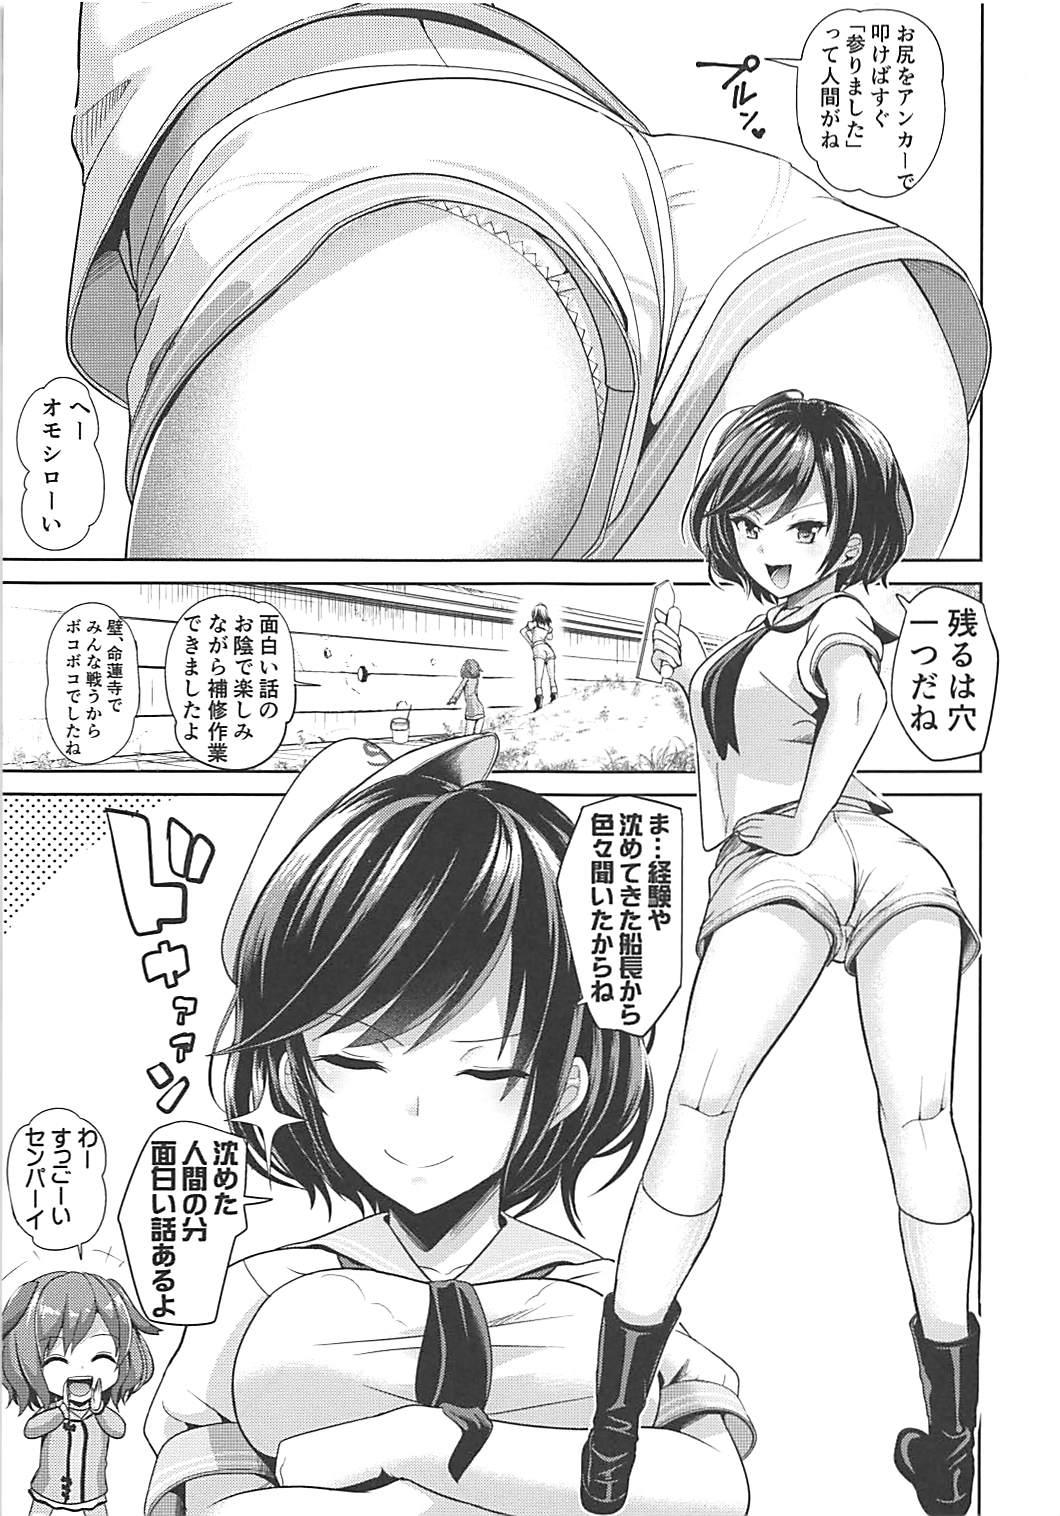 Shower Touhou Kabeshiri 9 Murasa Minamitsu - Touhou project Huge Boobs - Page 2